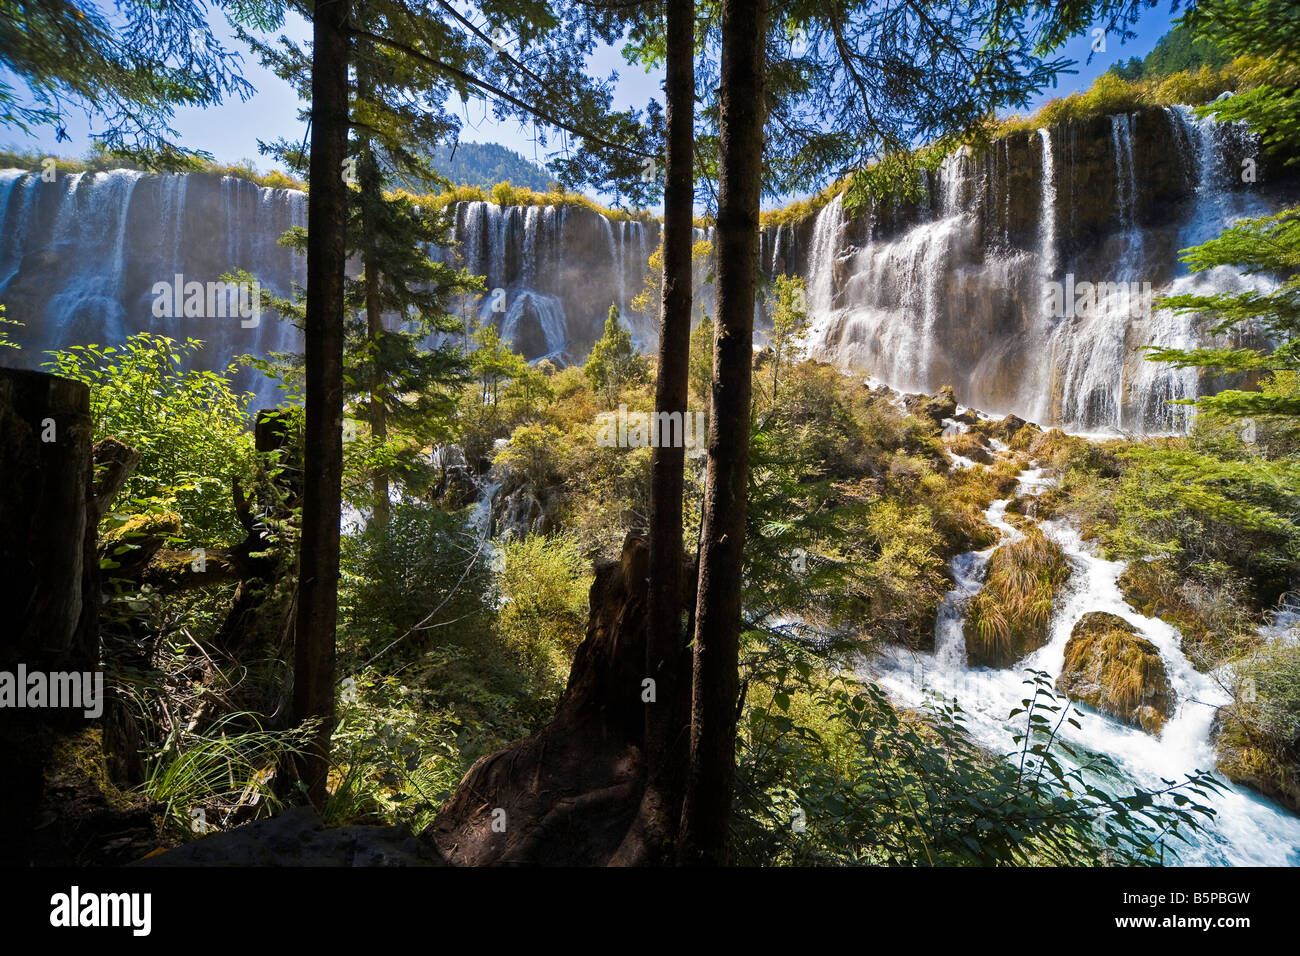 Vielversprechende Bright Bay Wasserfall oder Nuorilang Pubu in Jiuzhaigou Natur behalten Provinz Sichuan China. Kurze Belichtungszeiten. JMH3574 Stockfoto